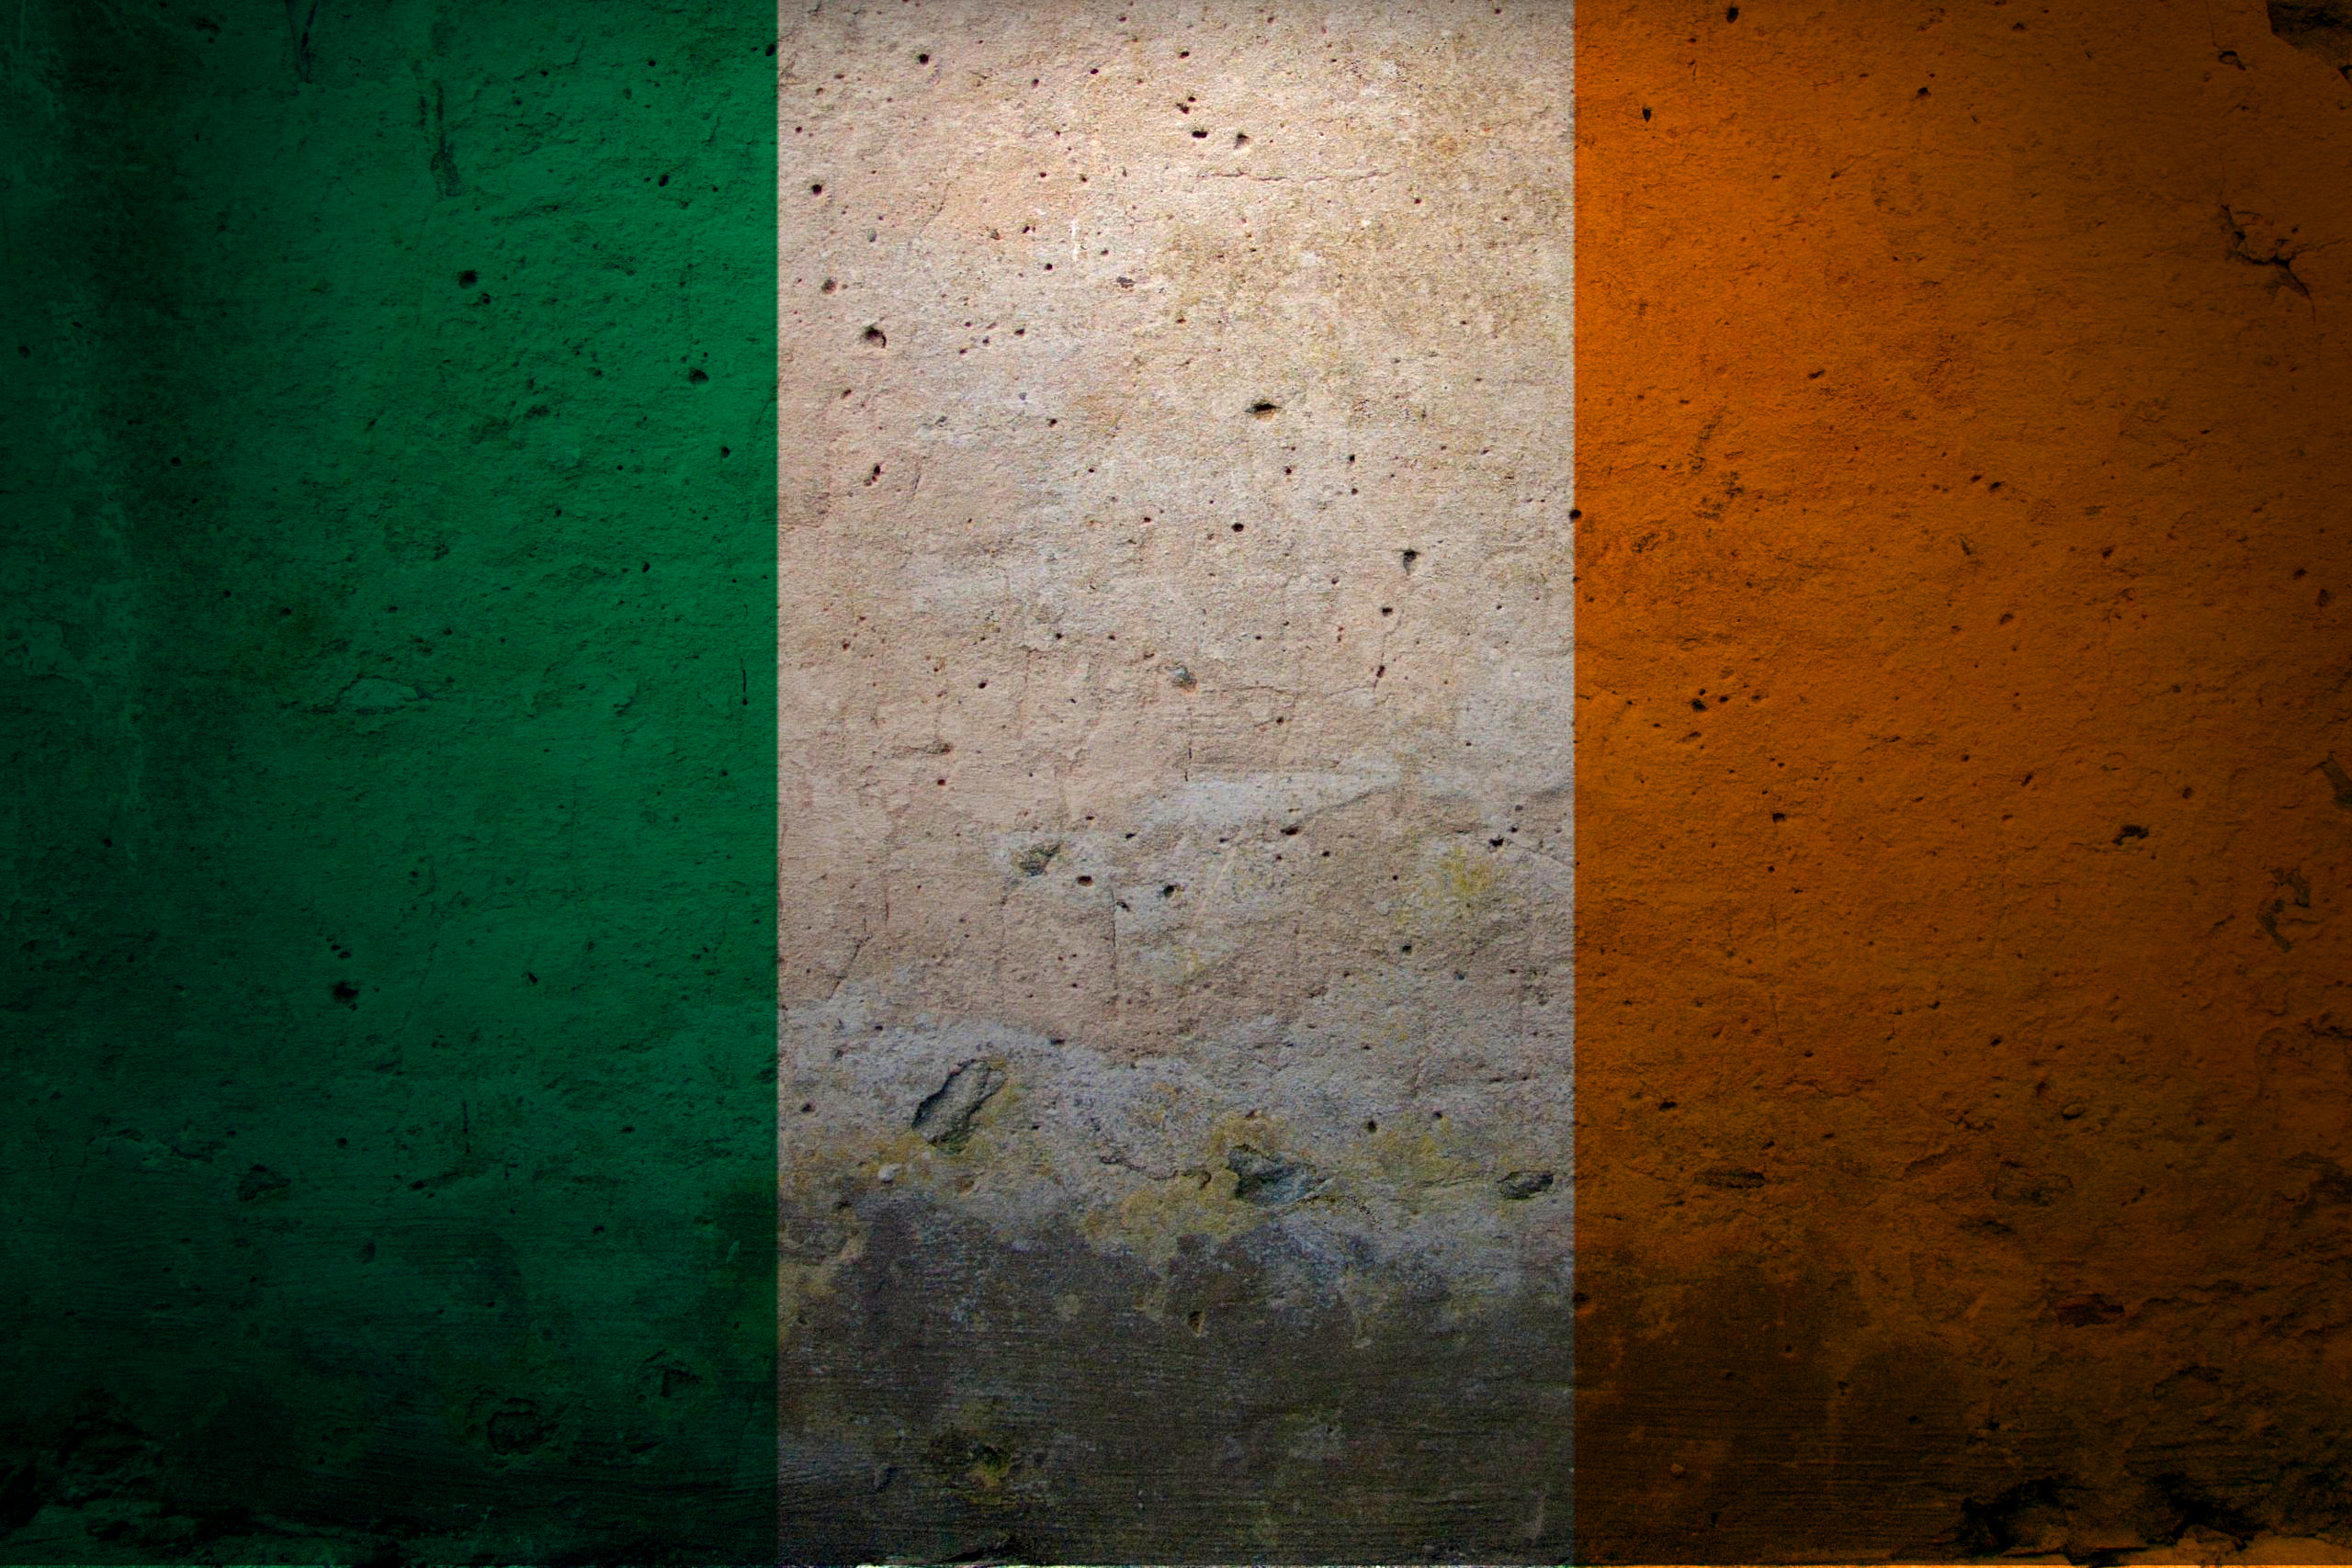 Nếu bạn là một fan của Ireland, thì hình nền lá cờ Ireland sẽ là sự lựa chọn tuyệt vời cho điện thoại của bạn! Nhấn vào hình ảnh để chúng tôi cung cấp cho bạn một hình nền đẹp và đầy cảm hứng!